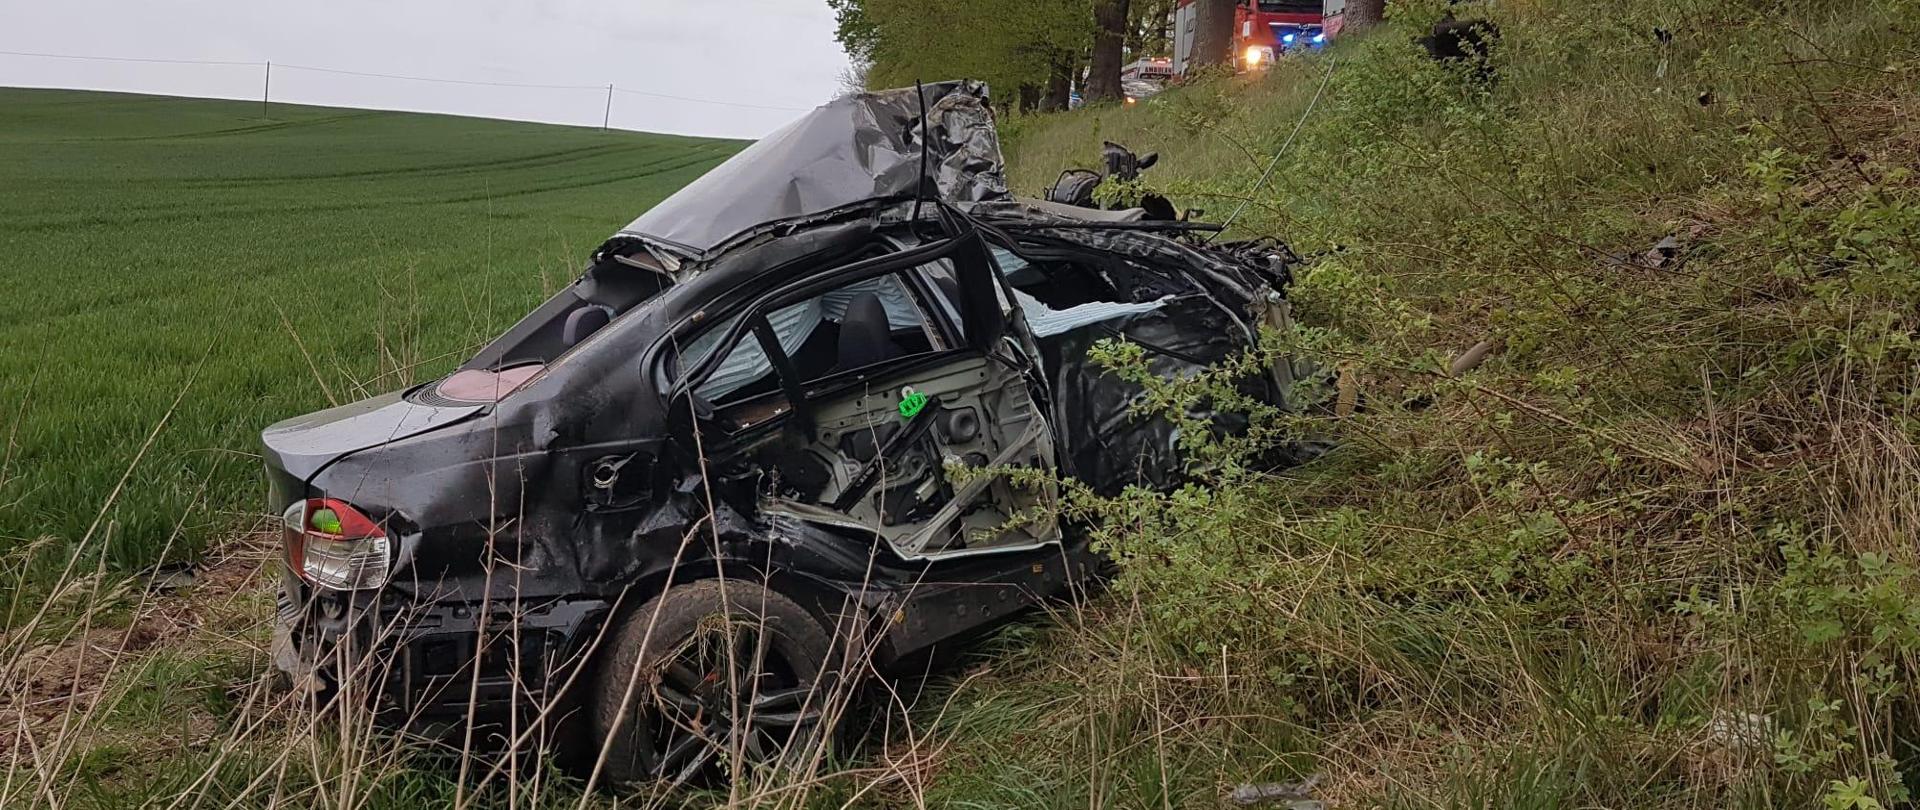 Na zdjęciu widoczny jest uszkodzony pojazd marki BMW. Auto ze zgniecionym przodem znajduje się w połowie przydrożnej skarpy. W tle, powyżej na jezdni ustawione są pojazdy ratownicze.